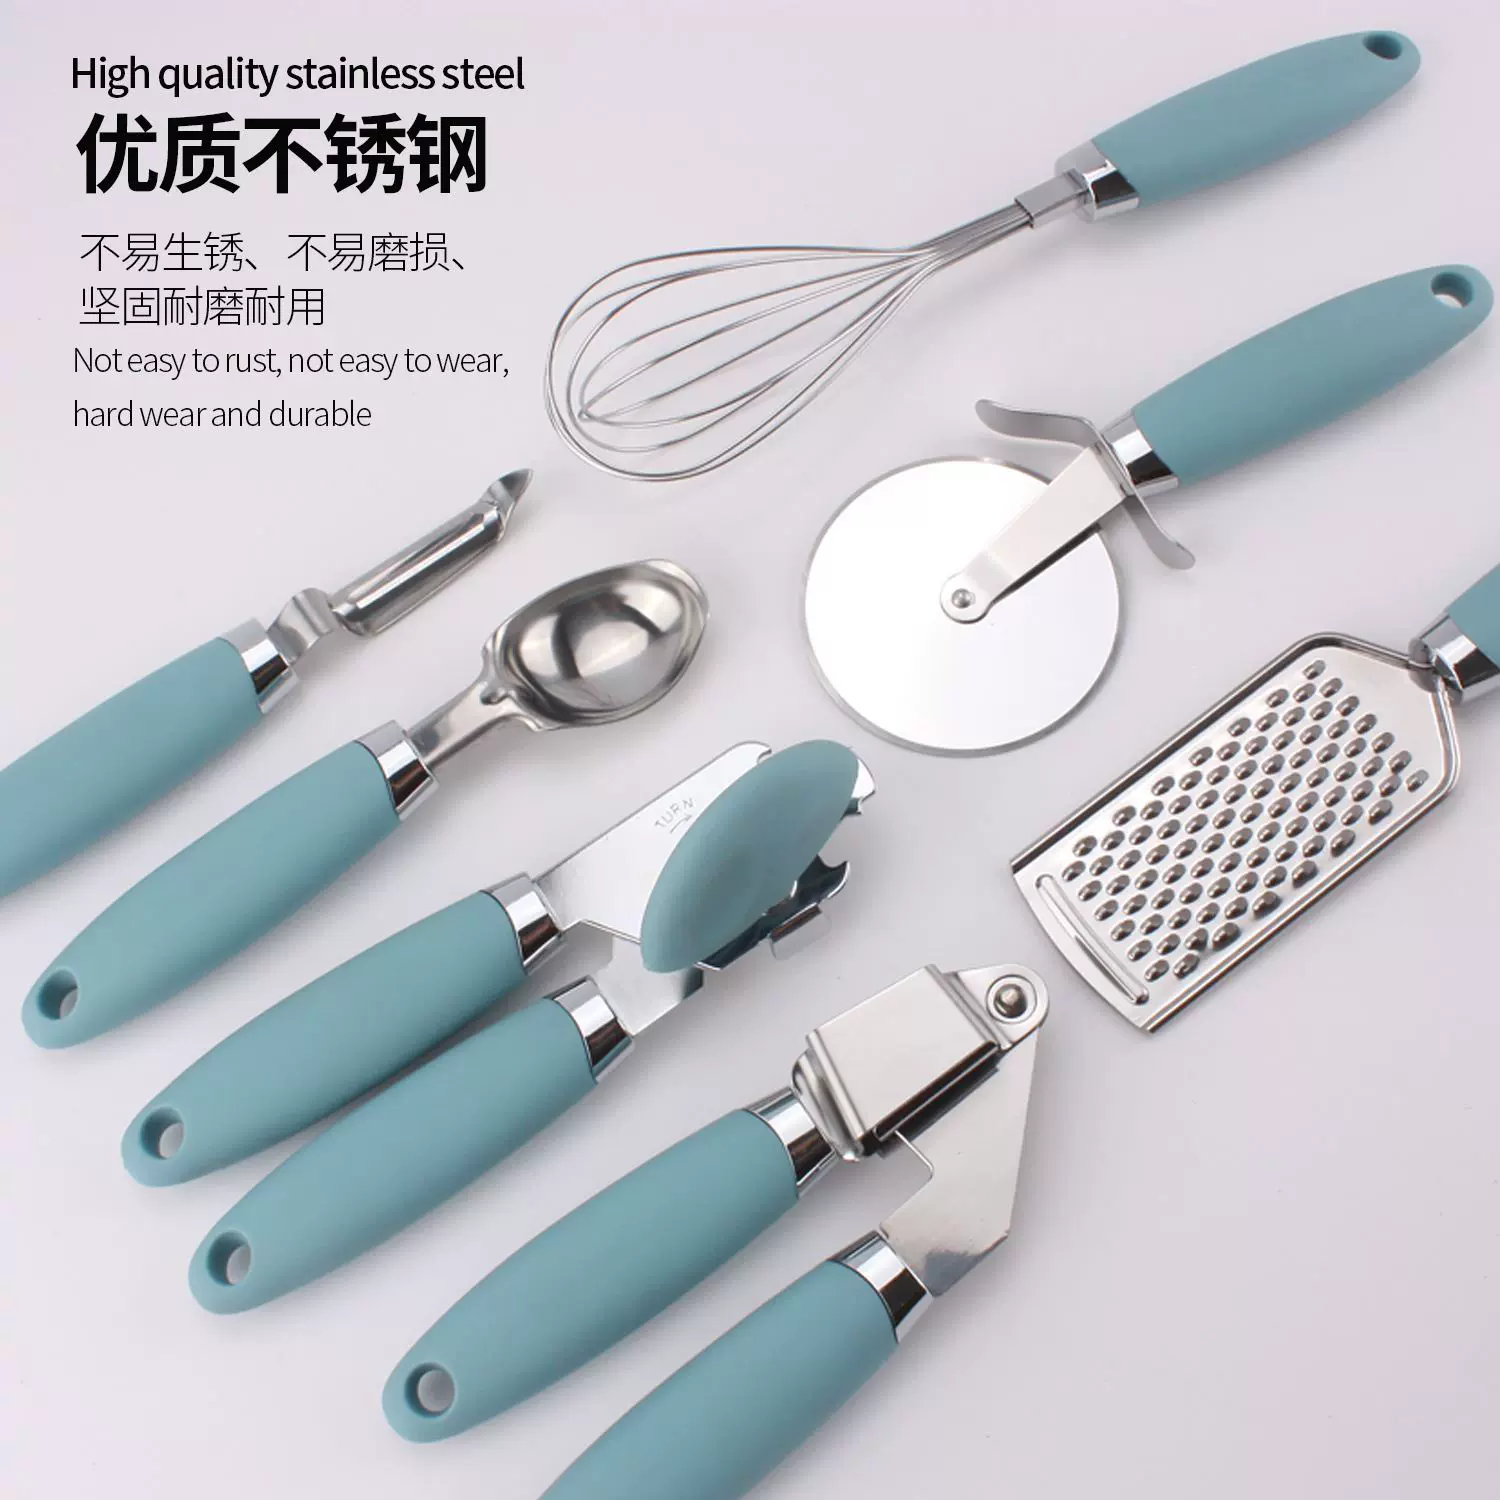 家用廚房工具不鏽鋼刨絲器 廚房用具kitchen 不鏽鋼小廚具7件套裝-Taobao